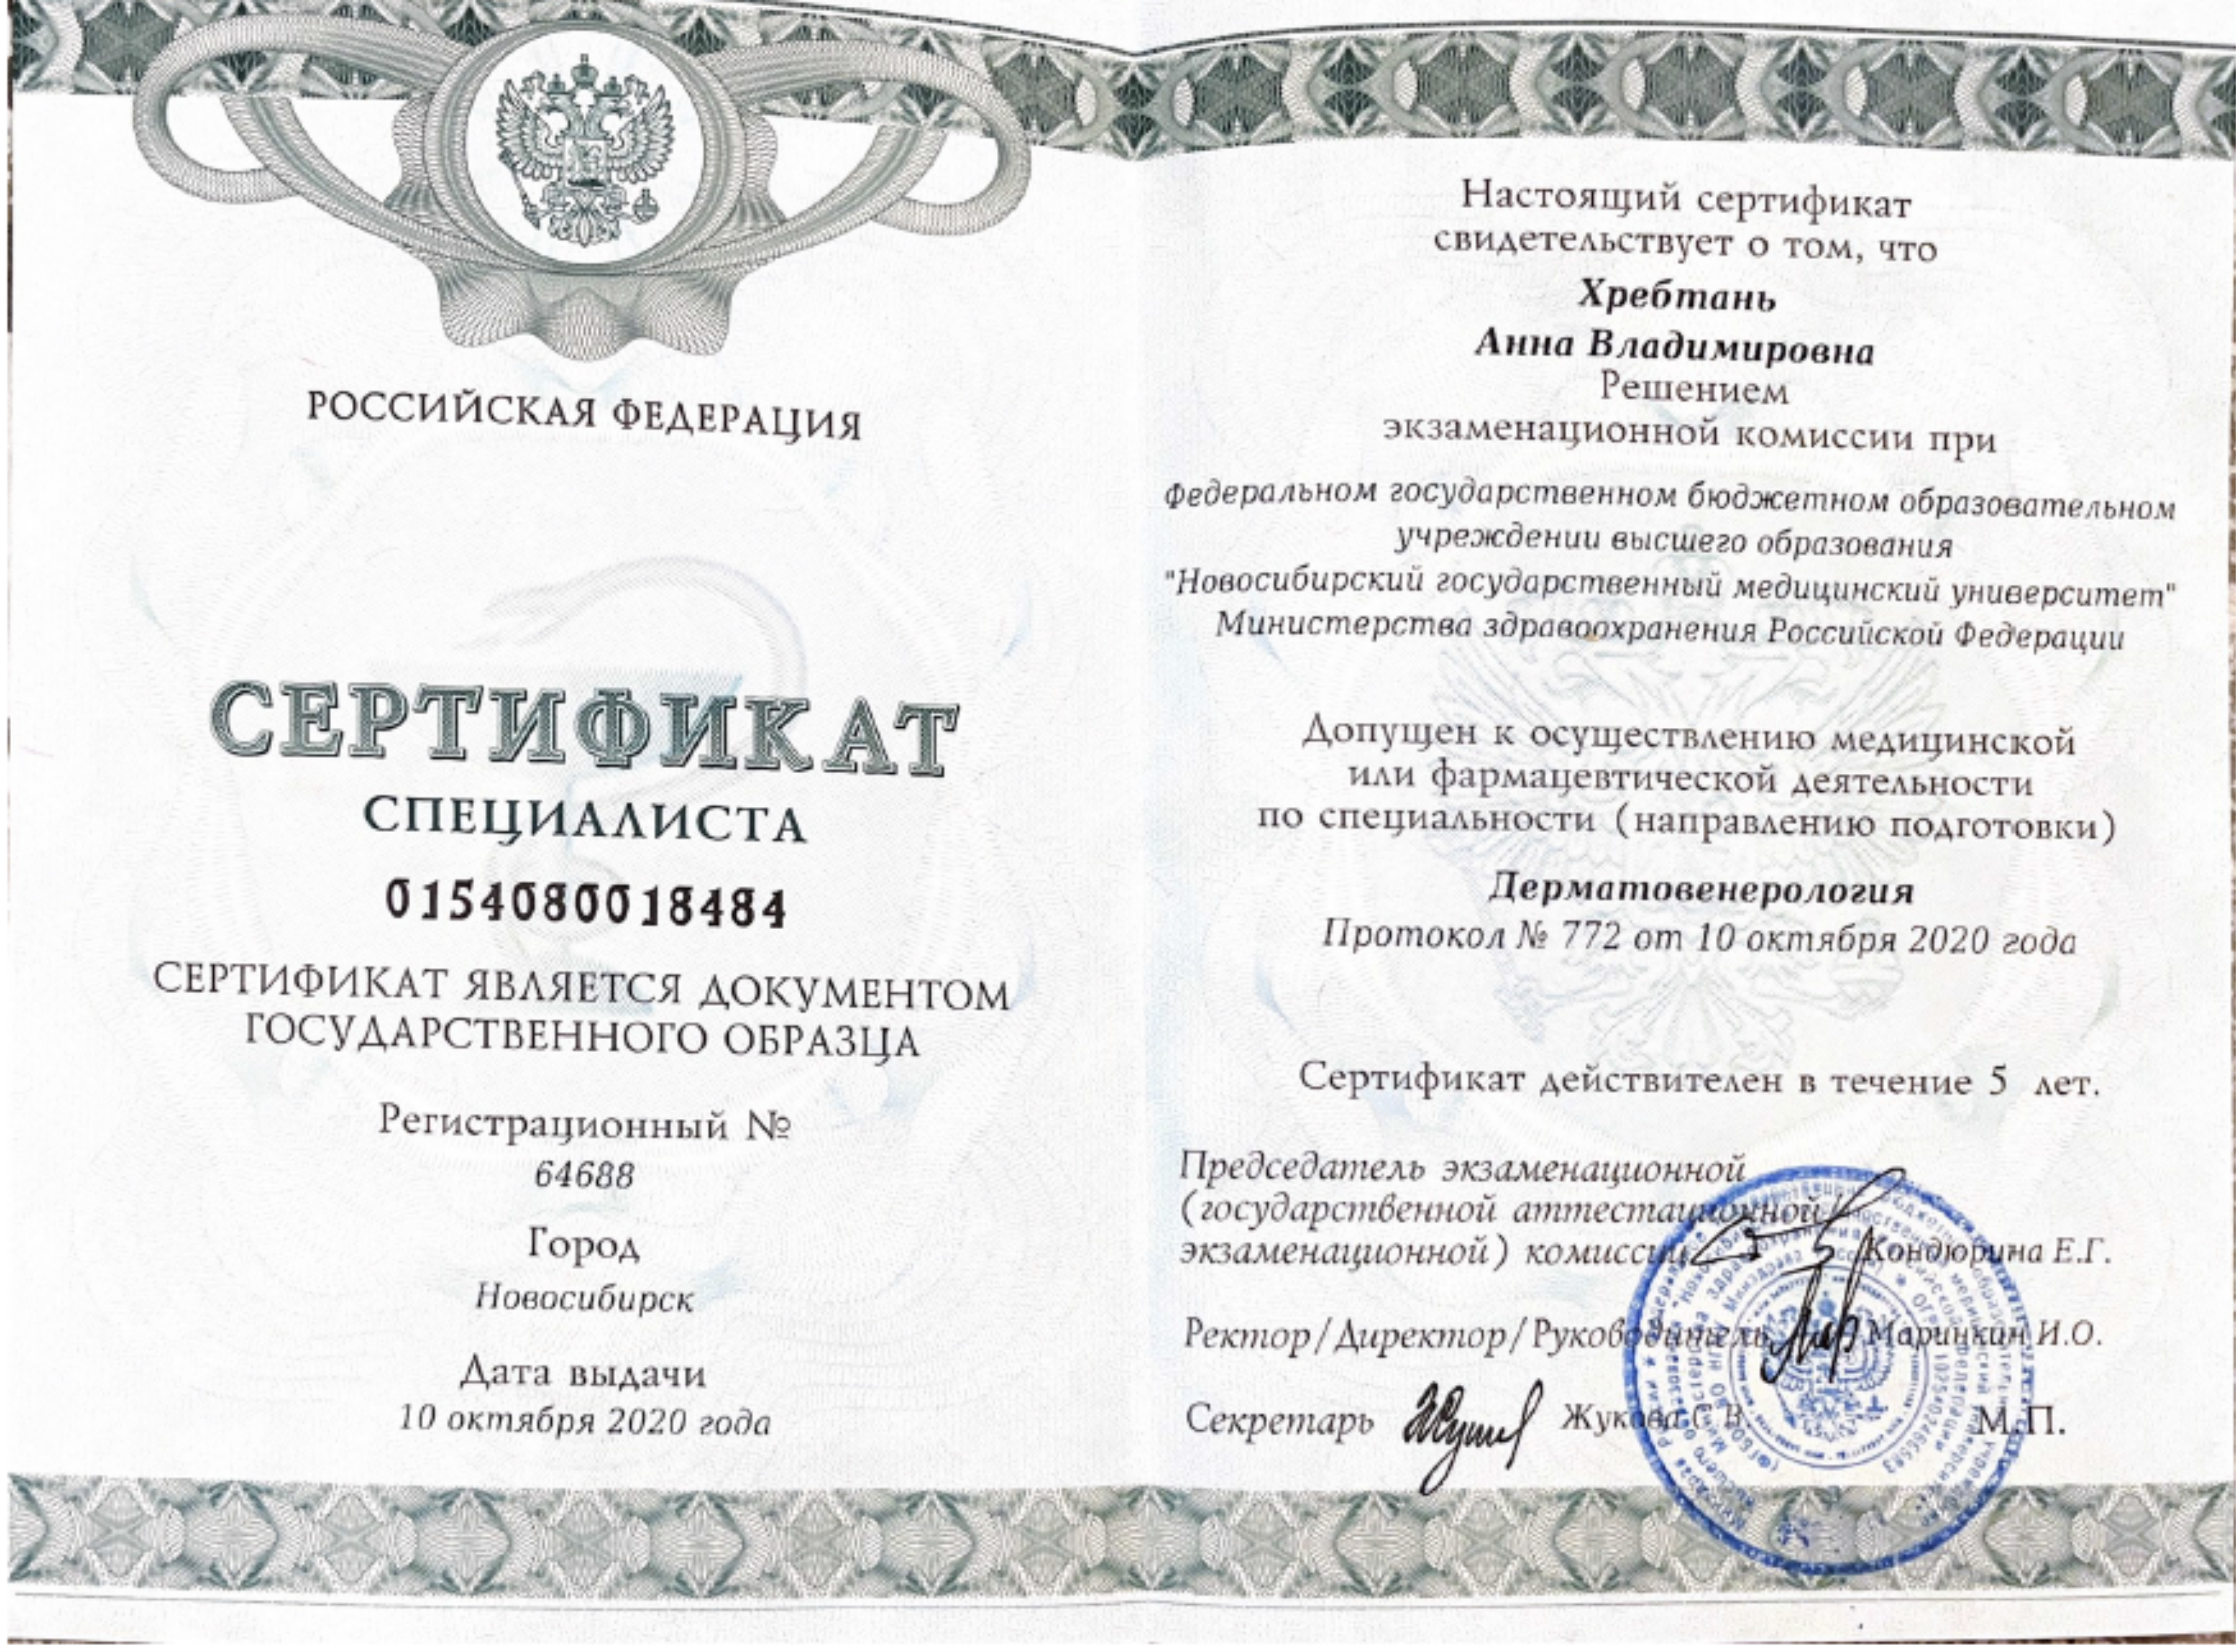 Сертификат специалиста "Дерматовенерология". 2020 г.